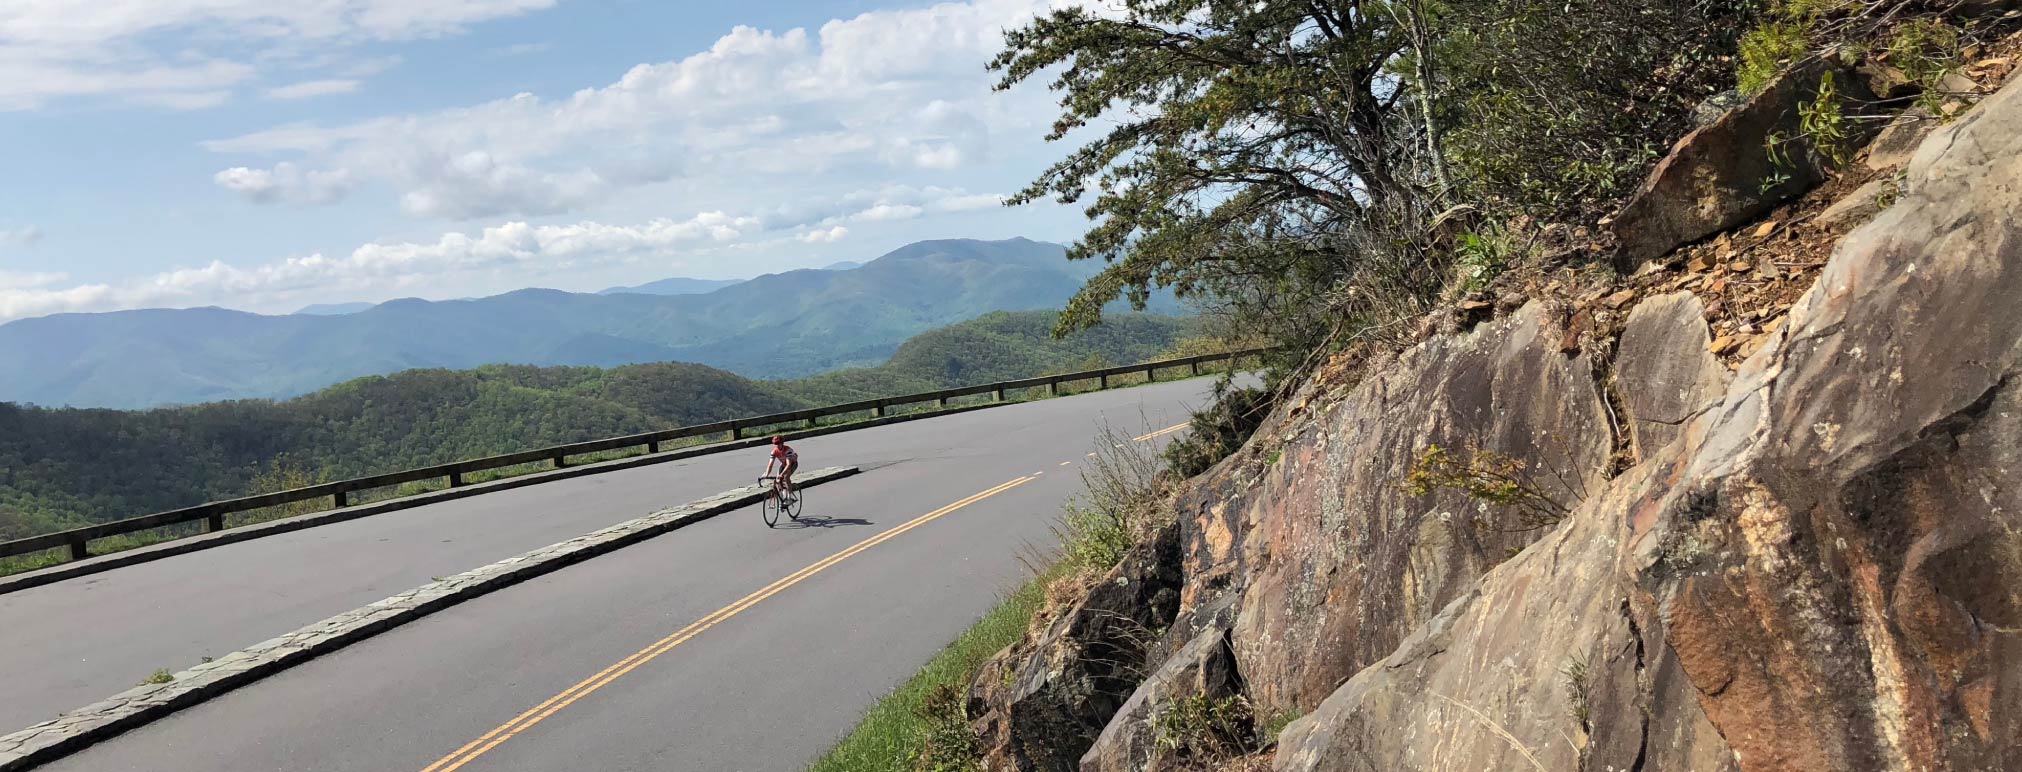 A person biking on Mt. Mitchell North Carolina